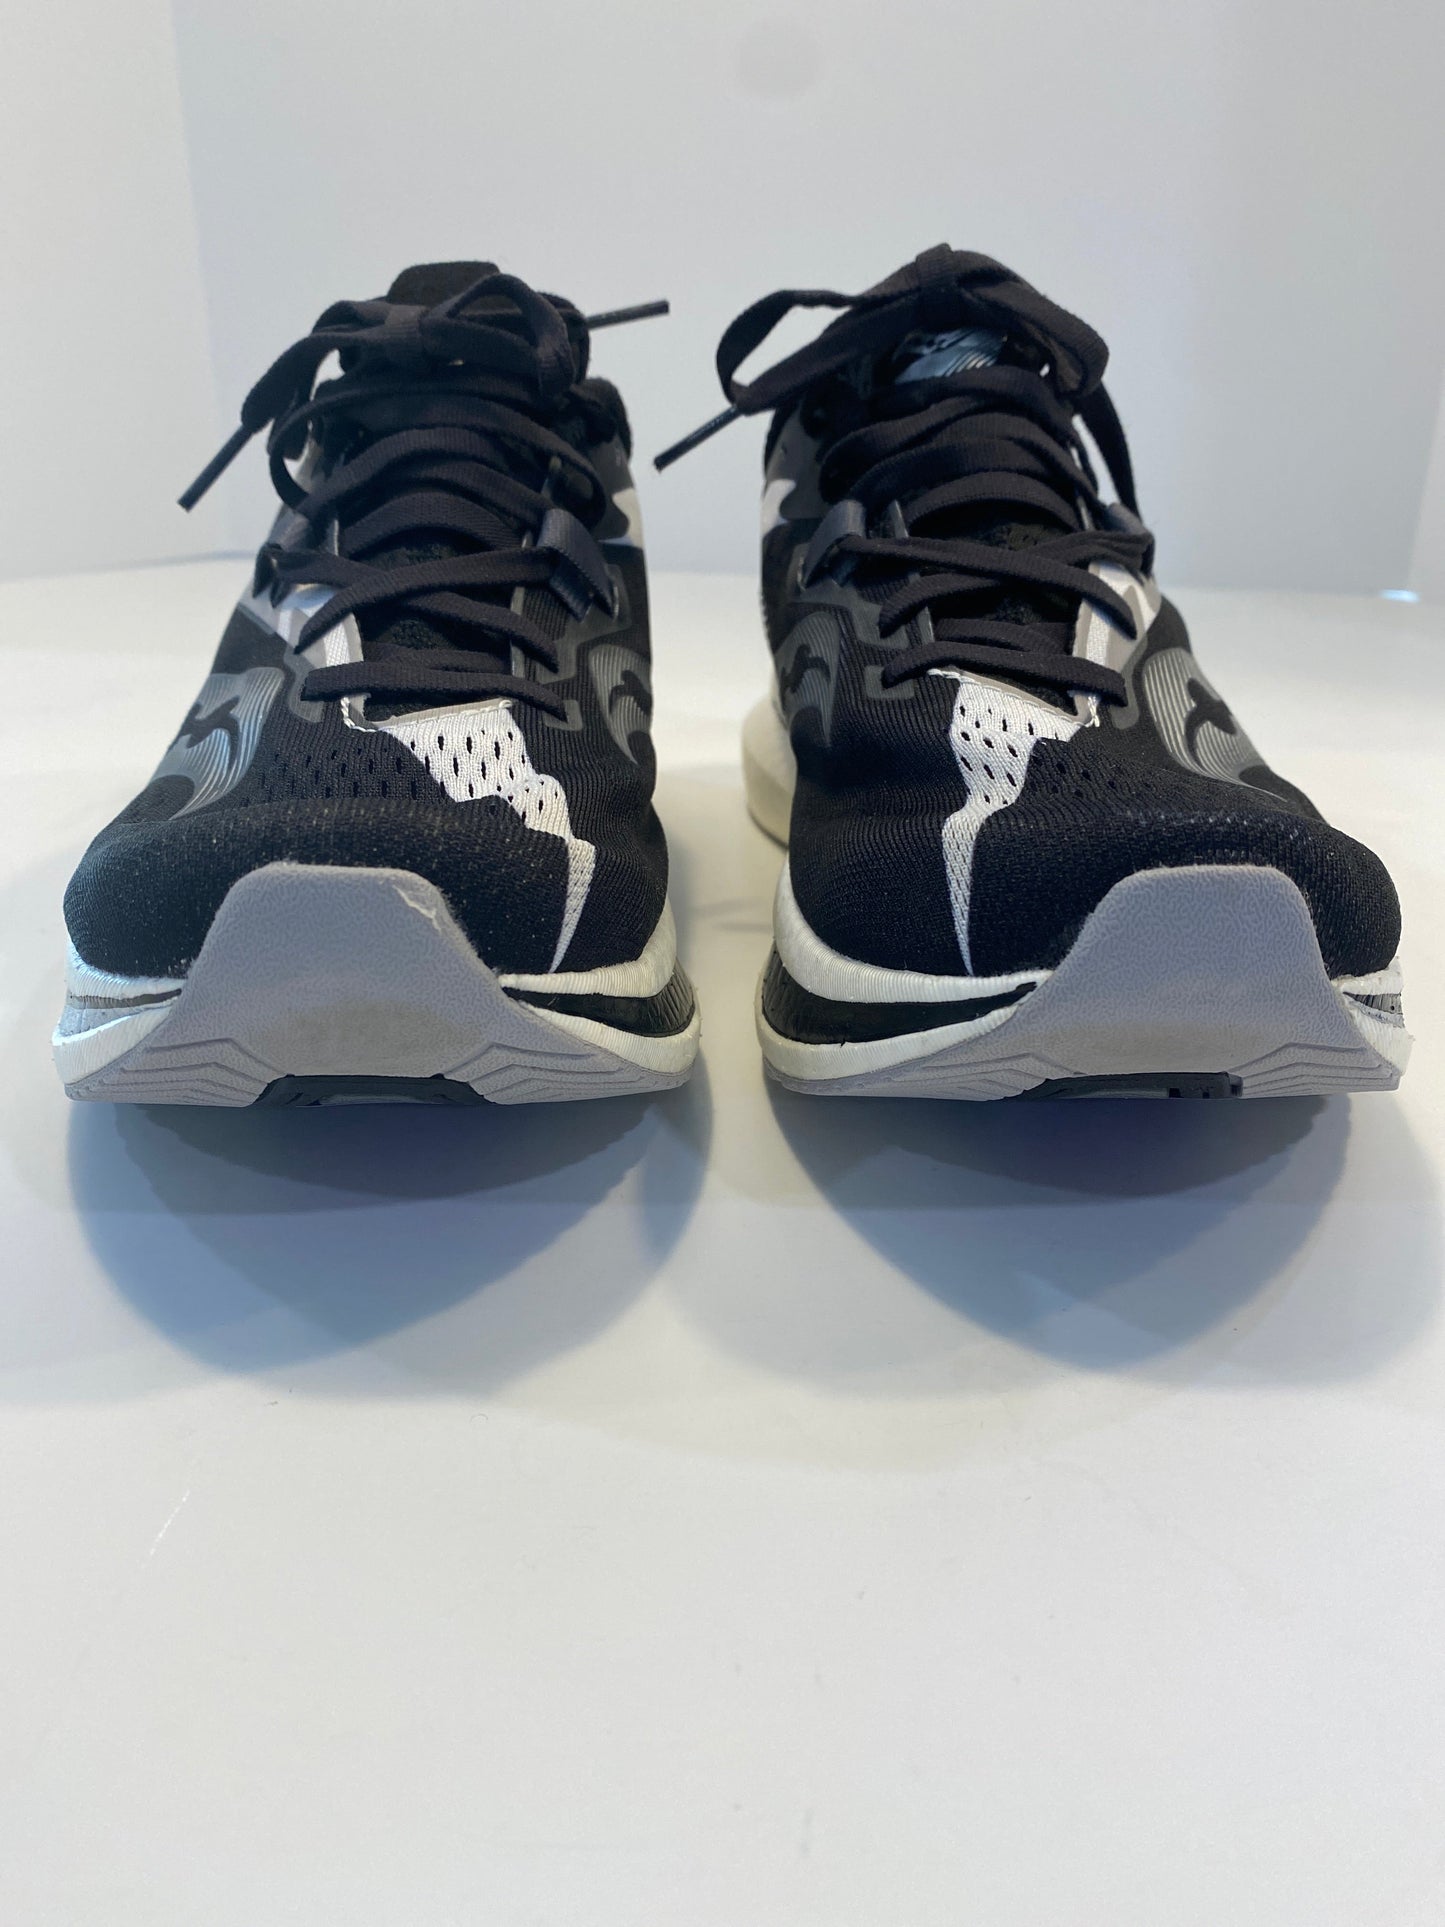 Black Shoes Athletic Saucony, Size 10